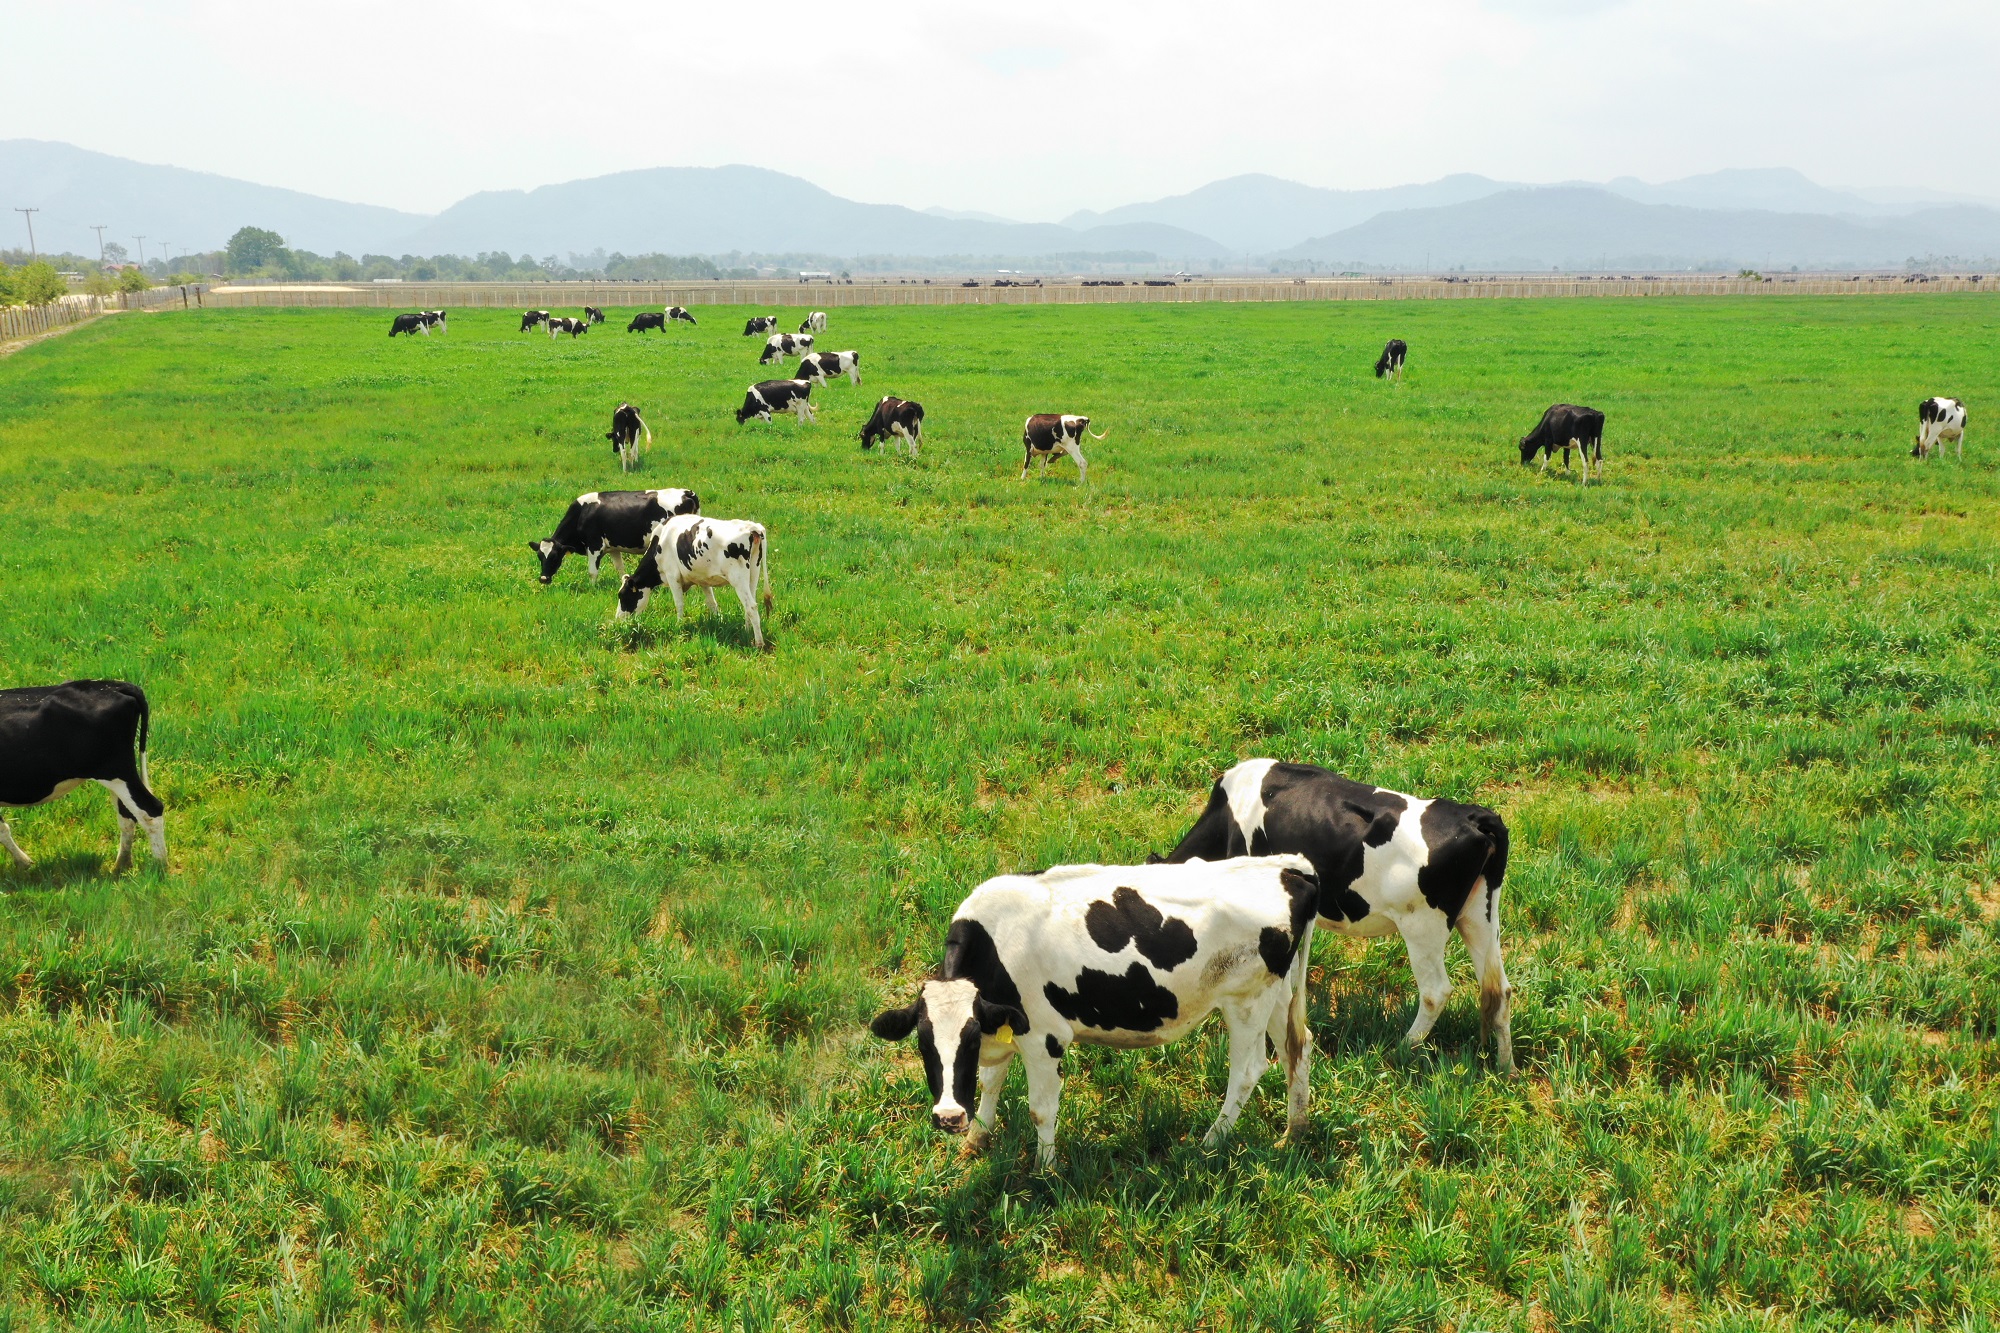 Liên kết nuôi bò sữa  Hướng phát triển kinh tế bền vững tại thị xã Thái Hòa